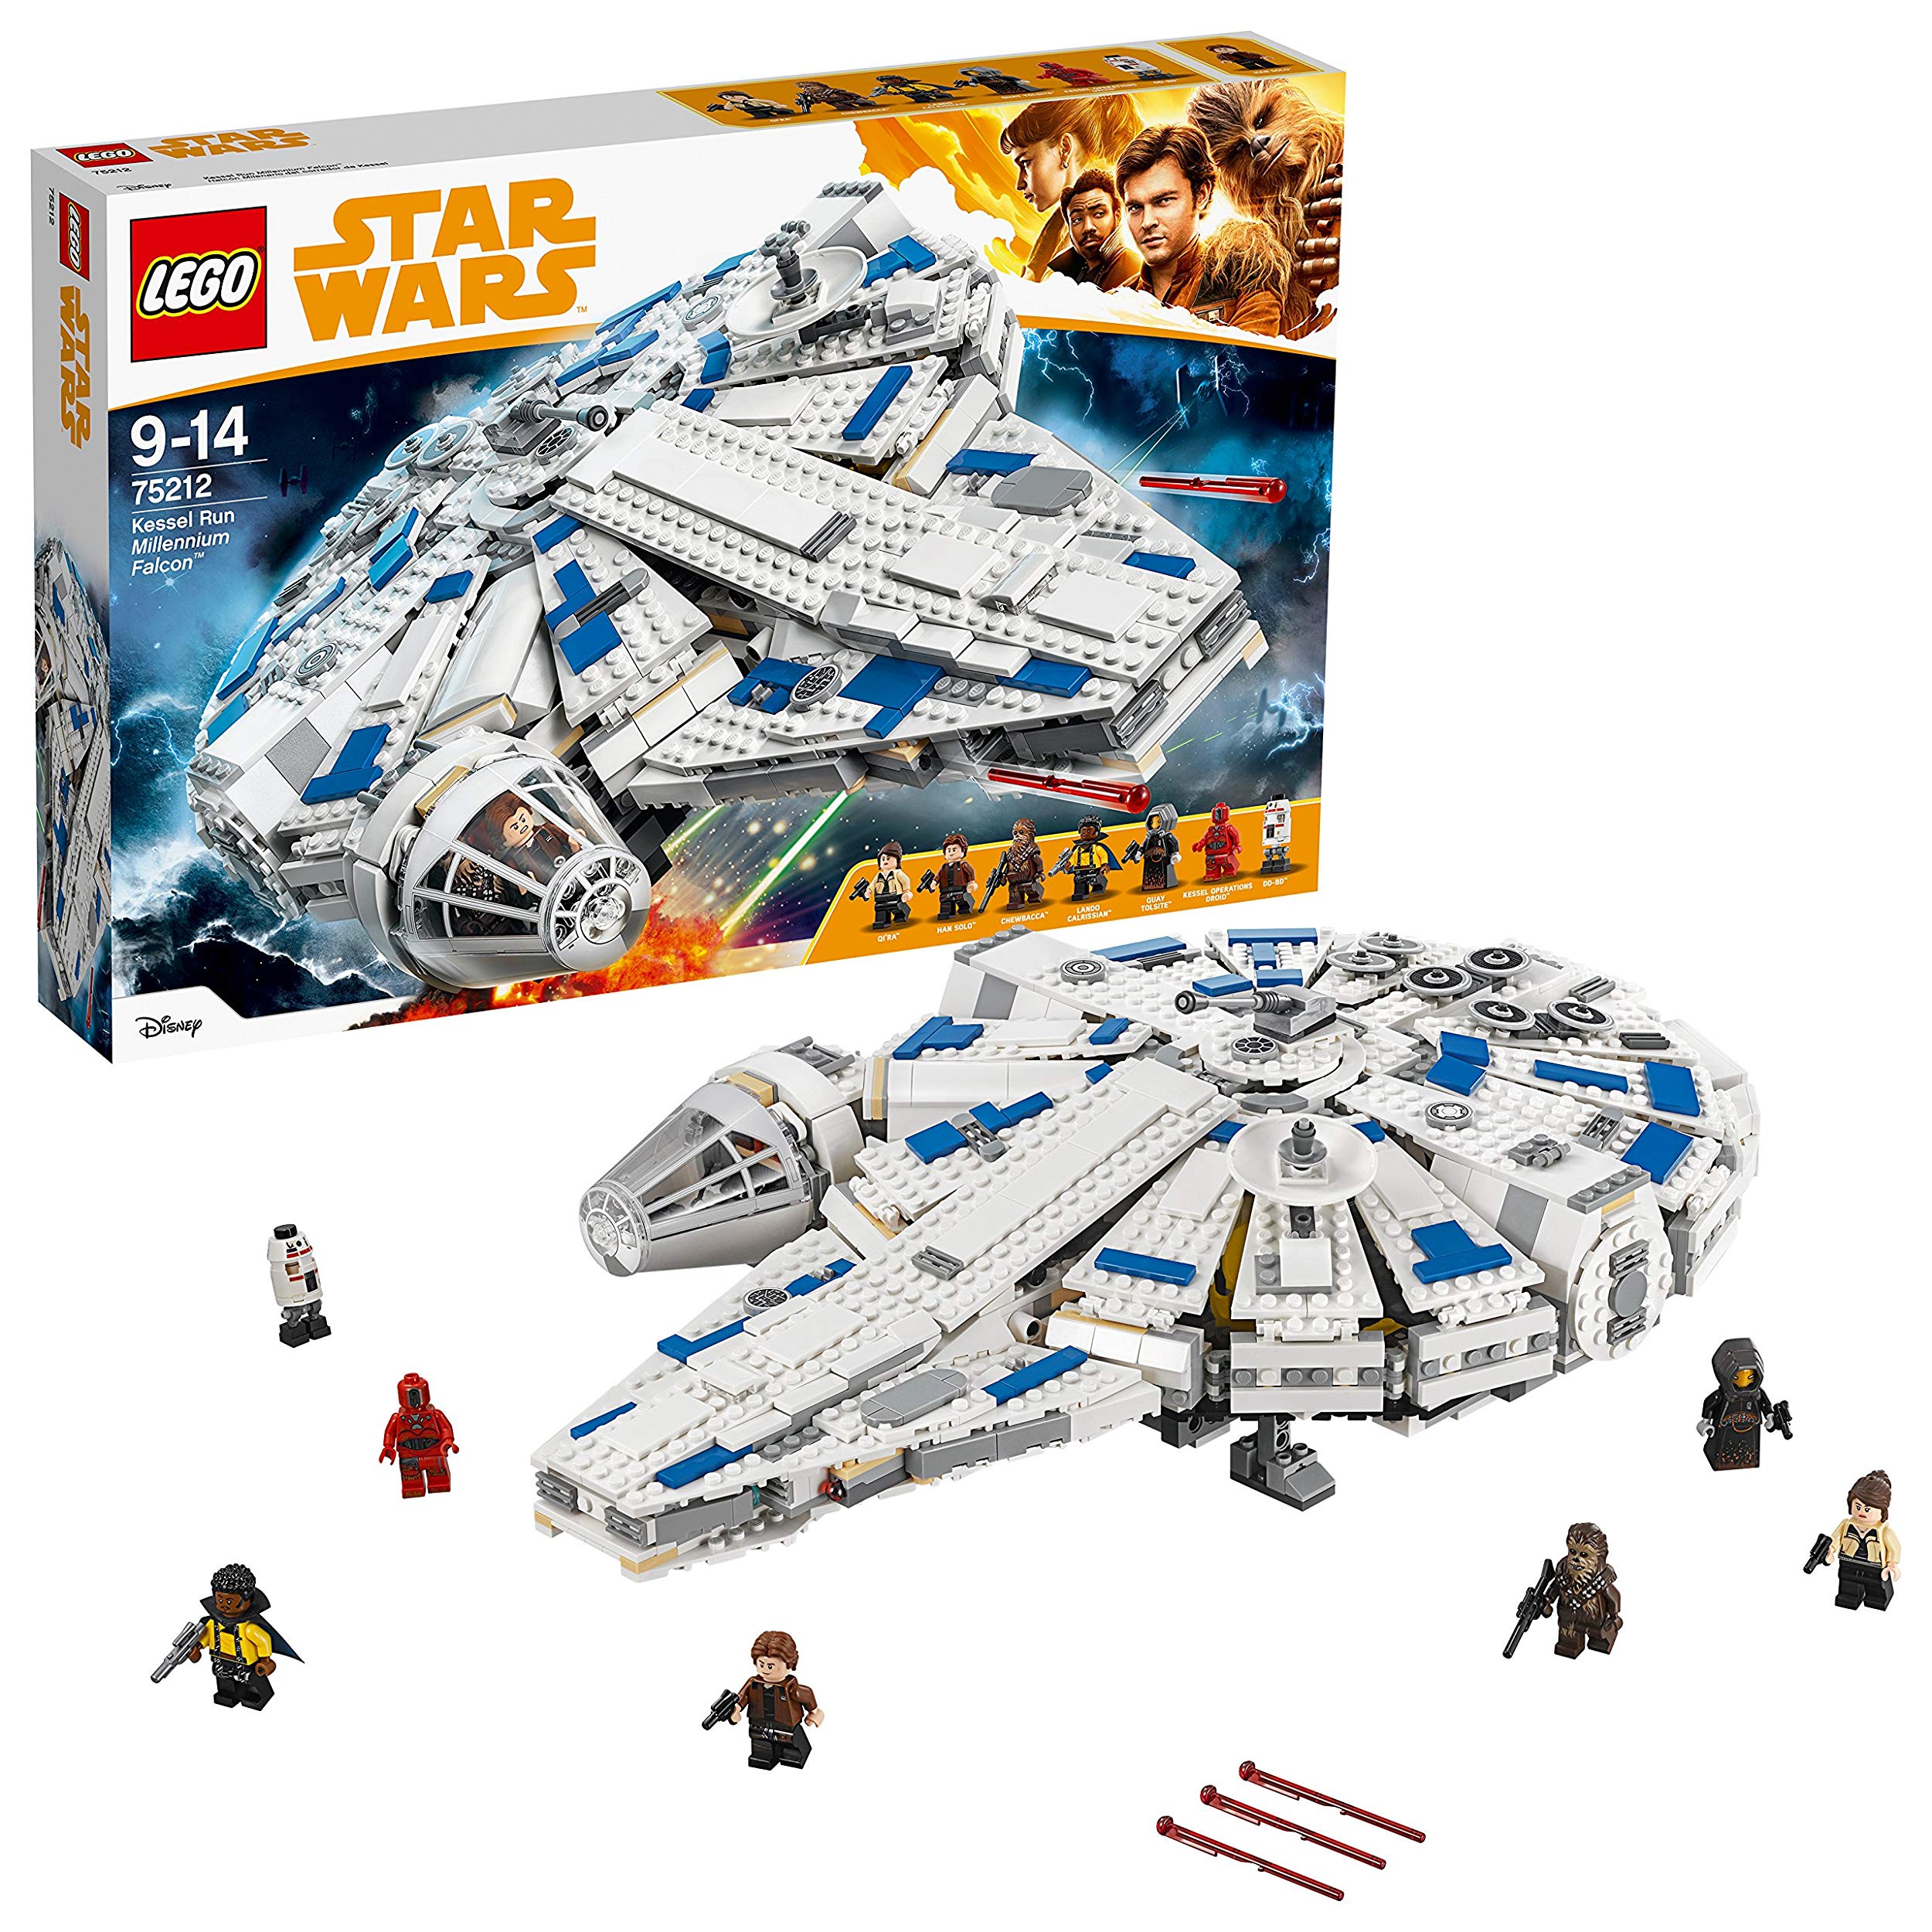 Lego Star Wars Millennium Falcon Kessel Run Star Wars Toy